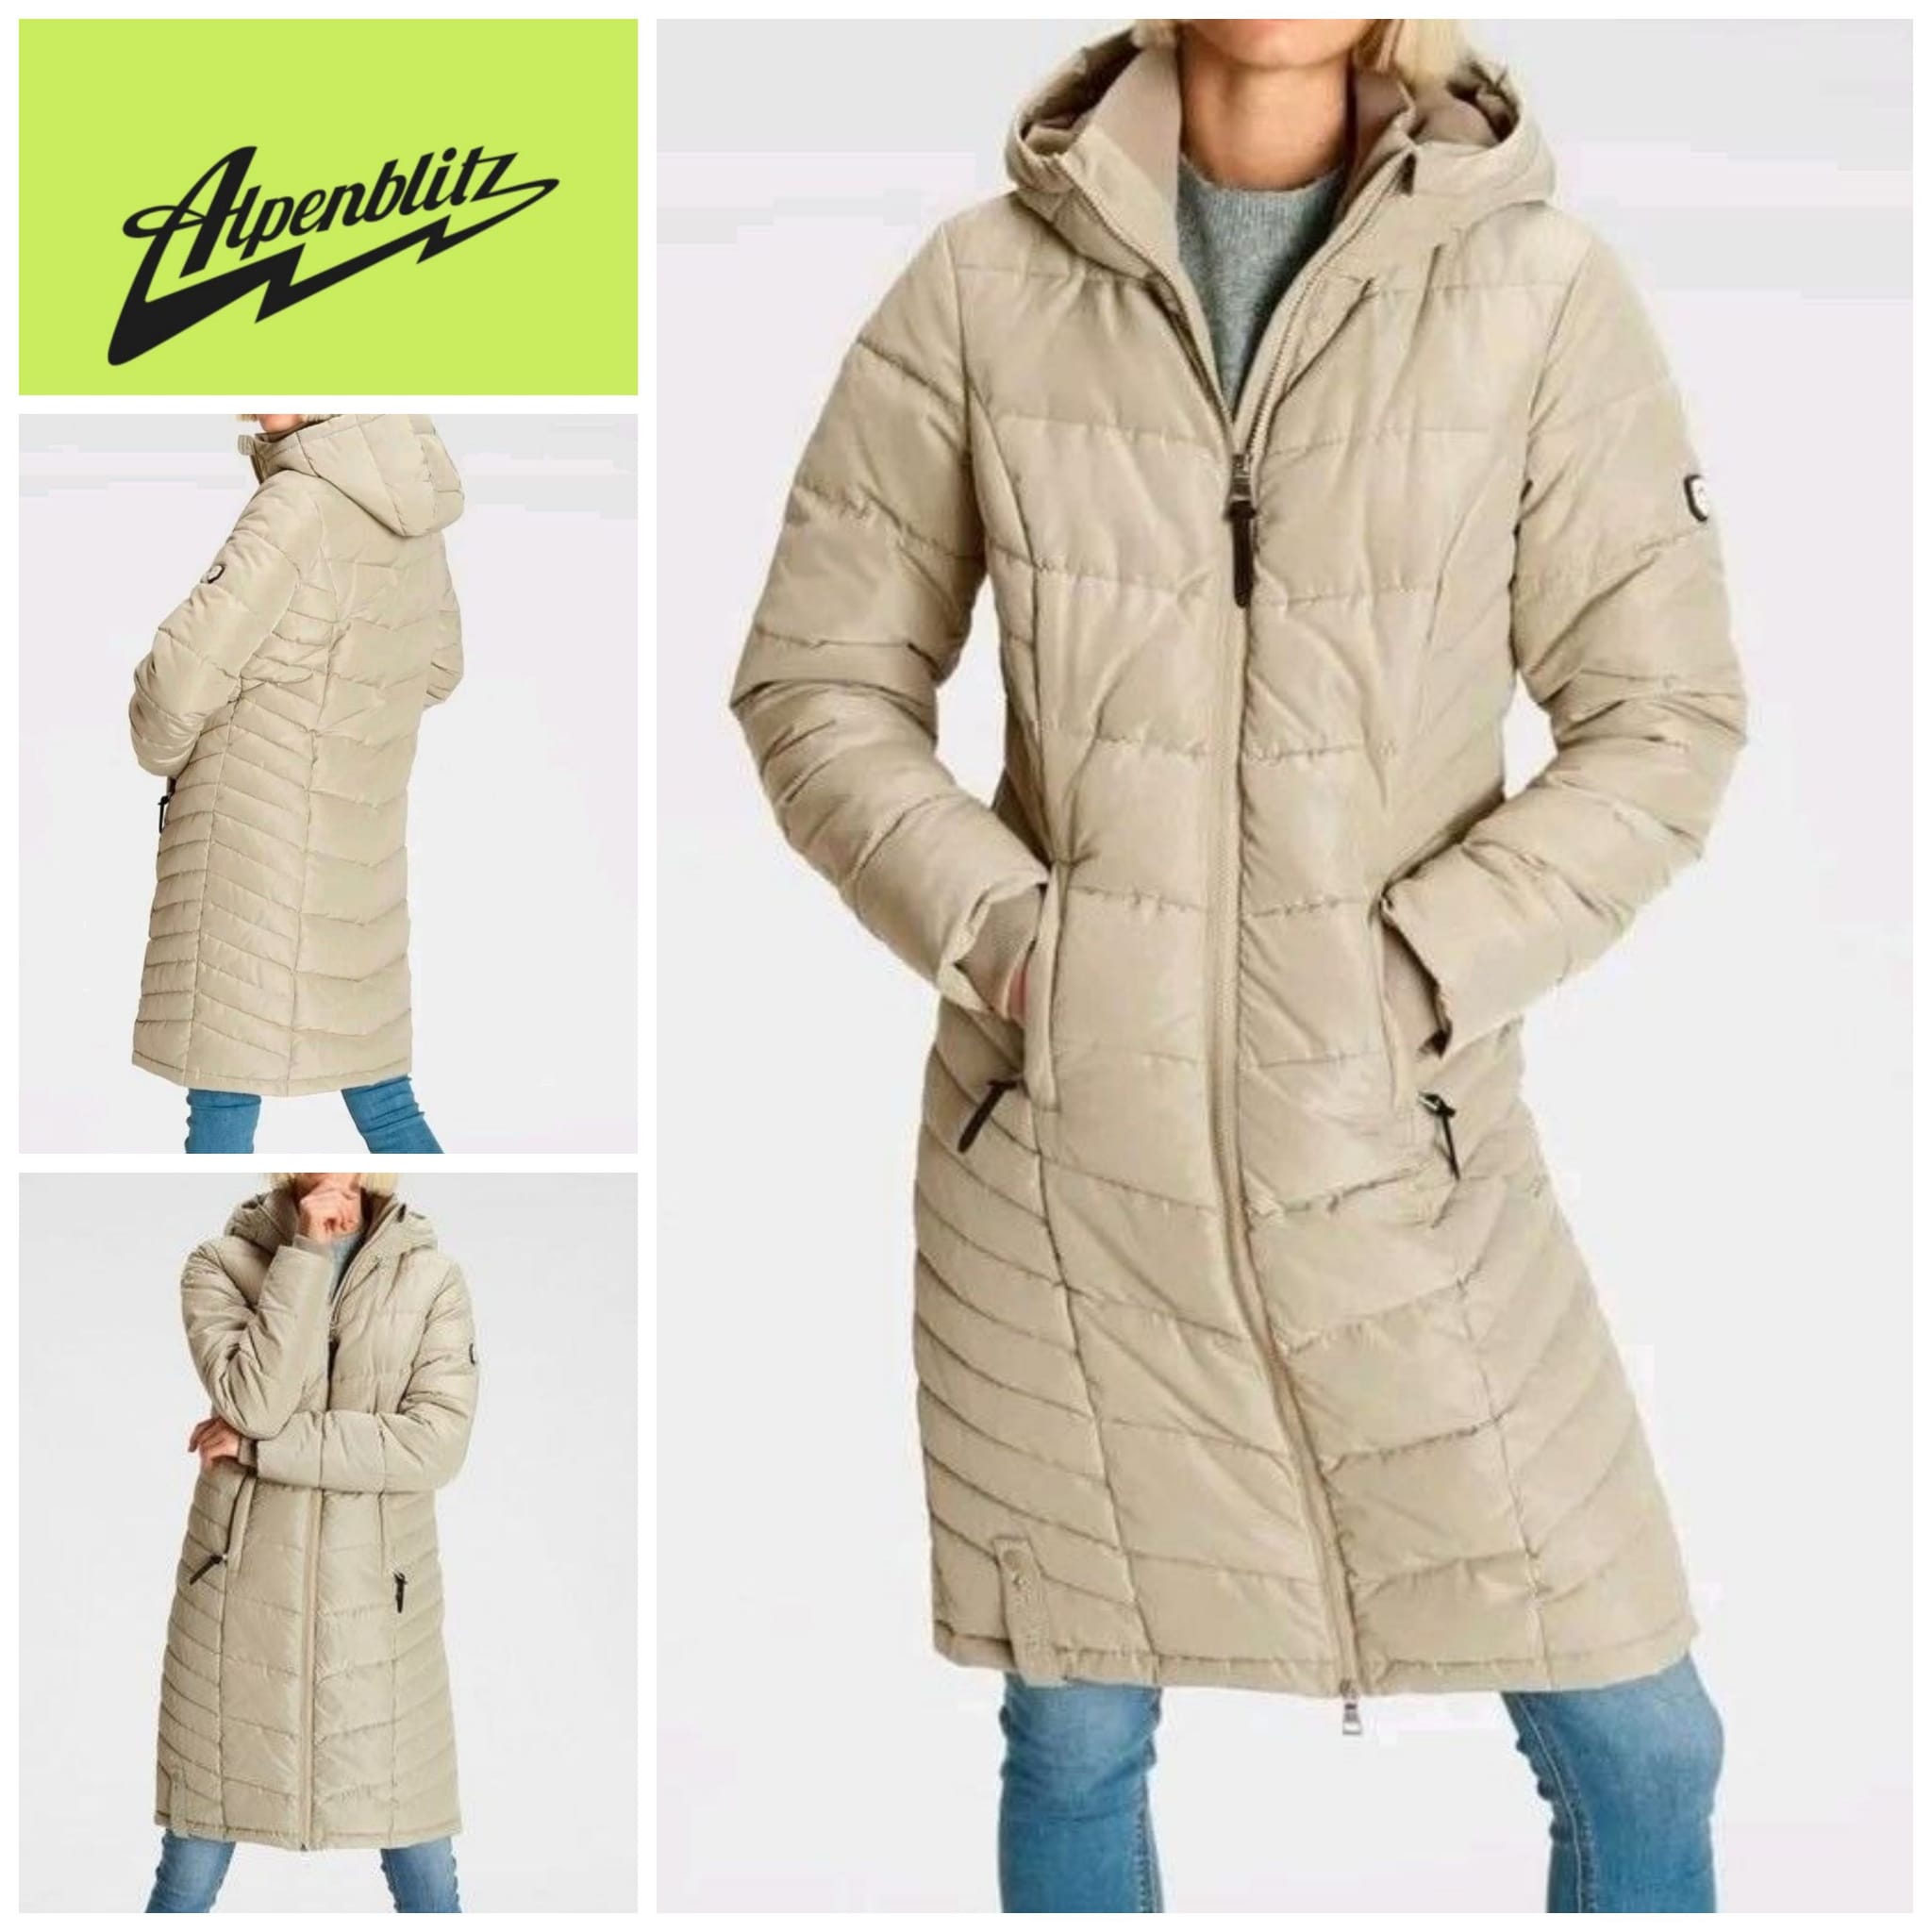 Женское зимнее пальто Alpenblitz